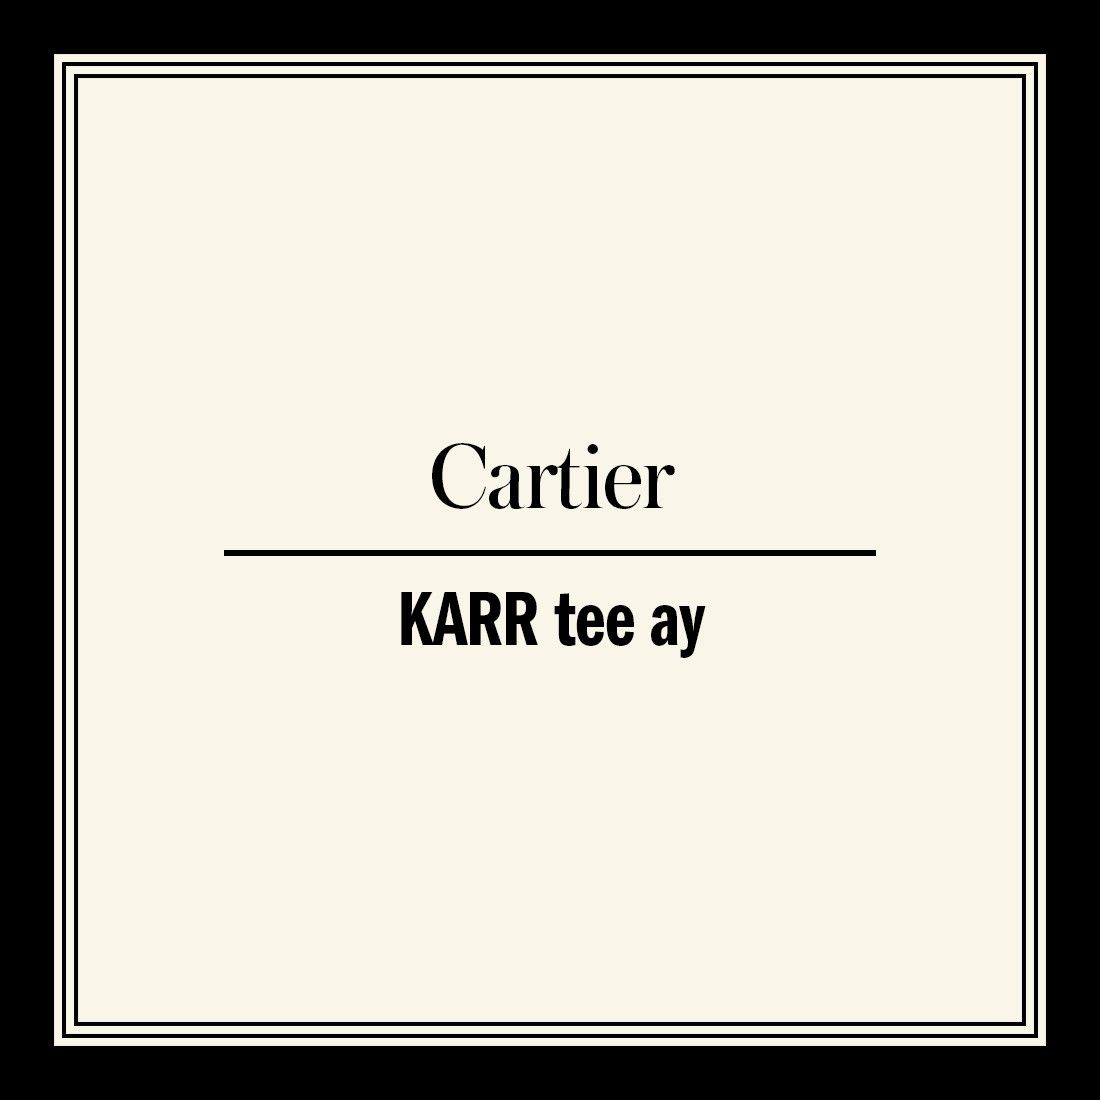 cartier pronunciation